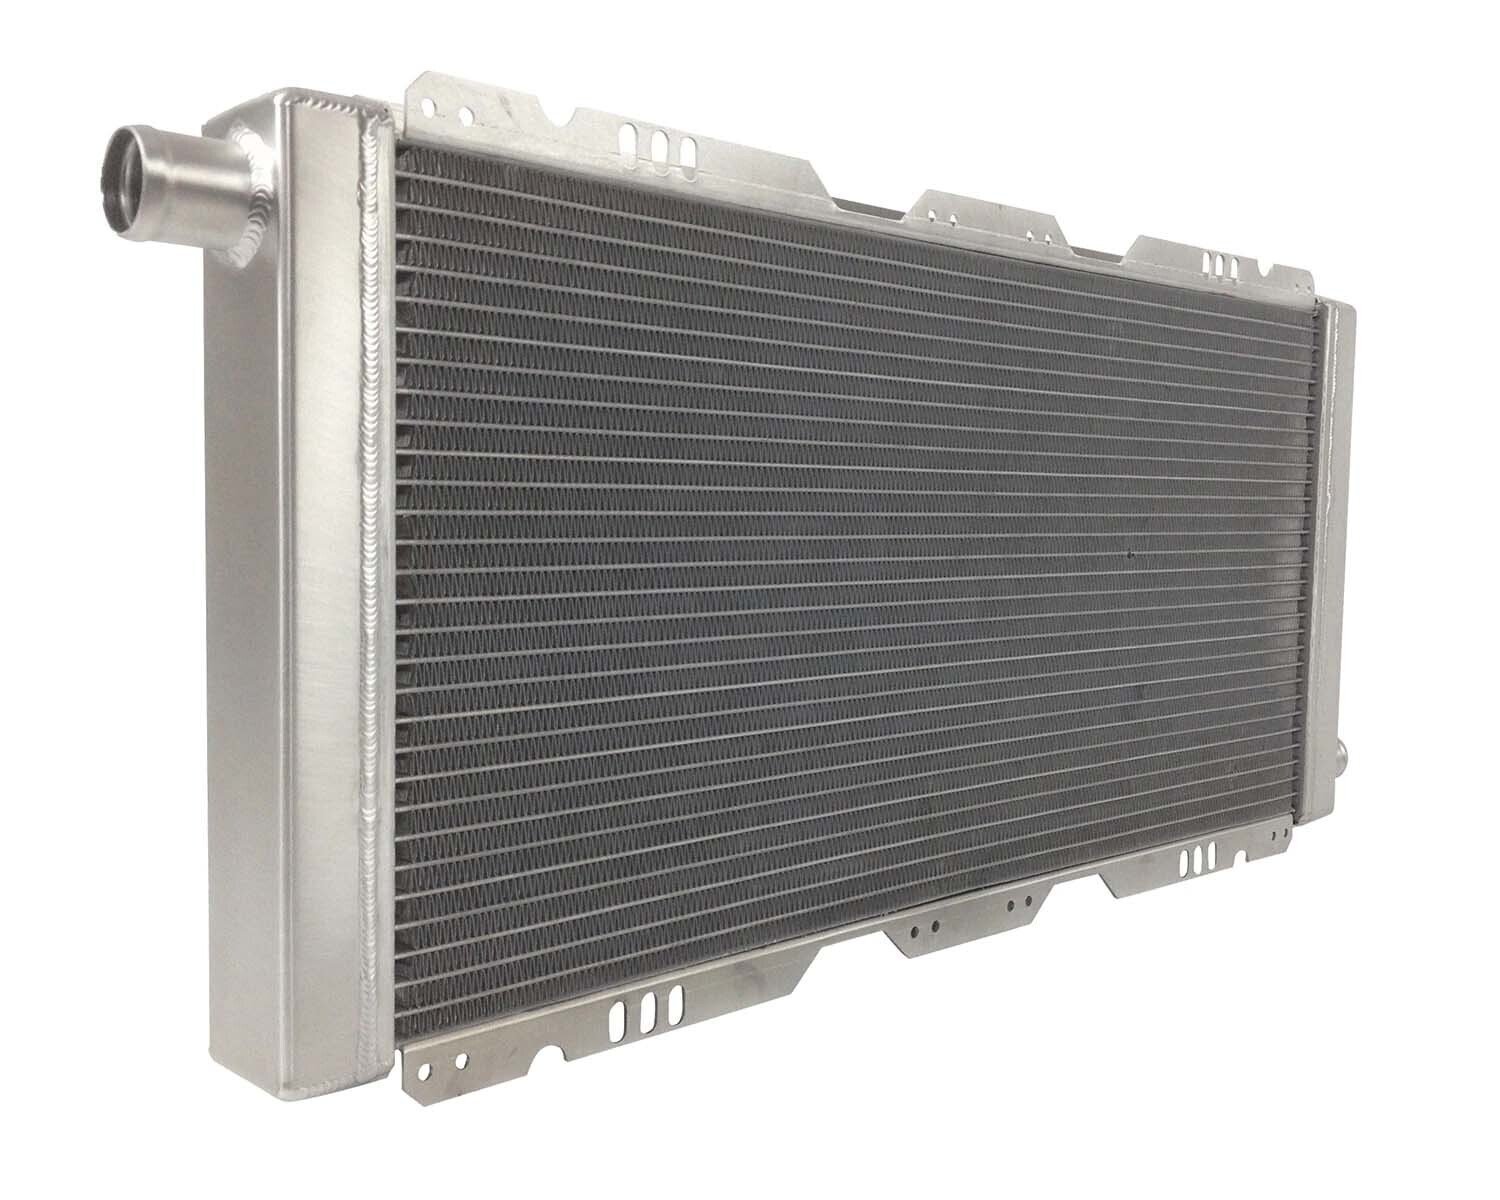 VX220 / Elise / Exige pro alloy radiator